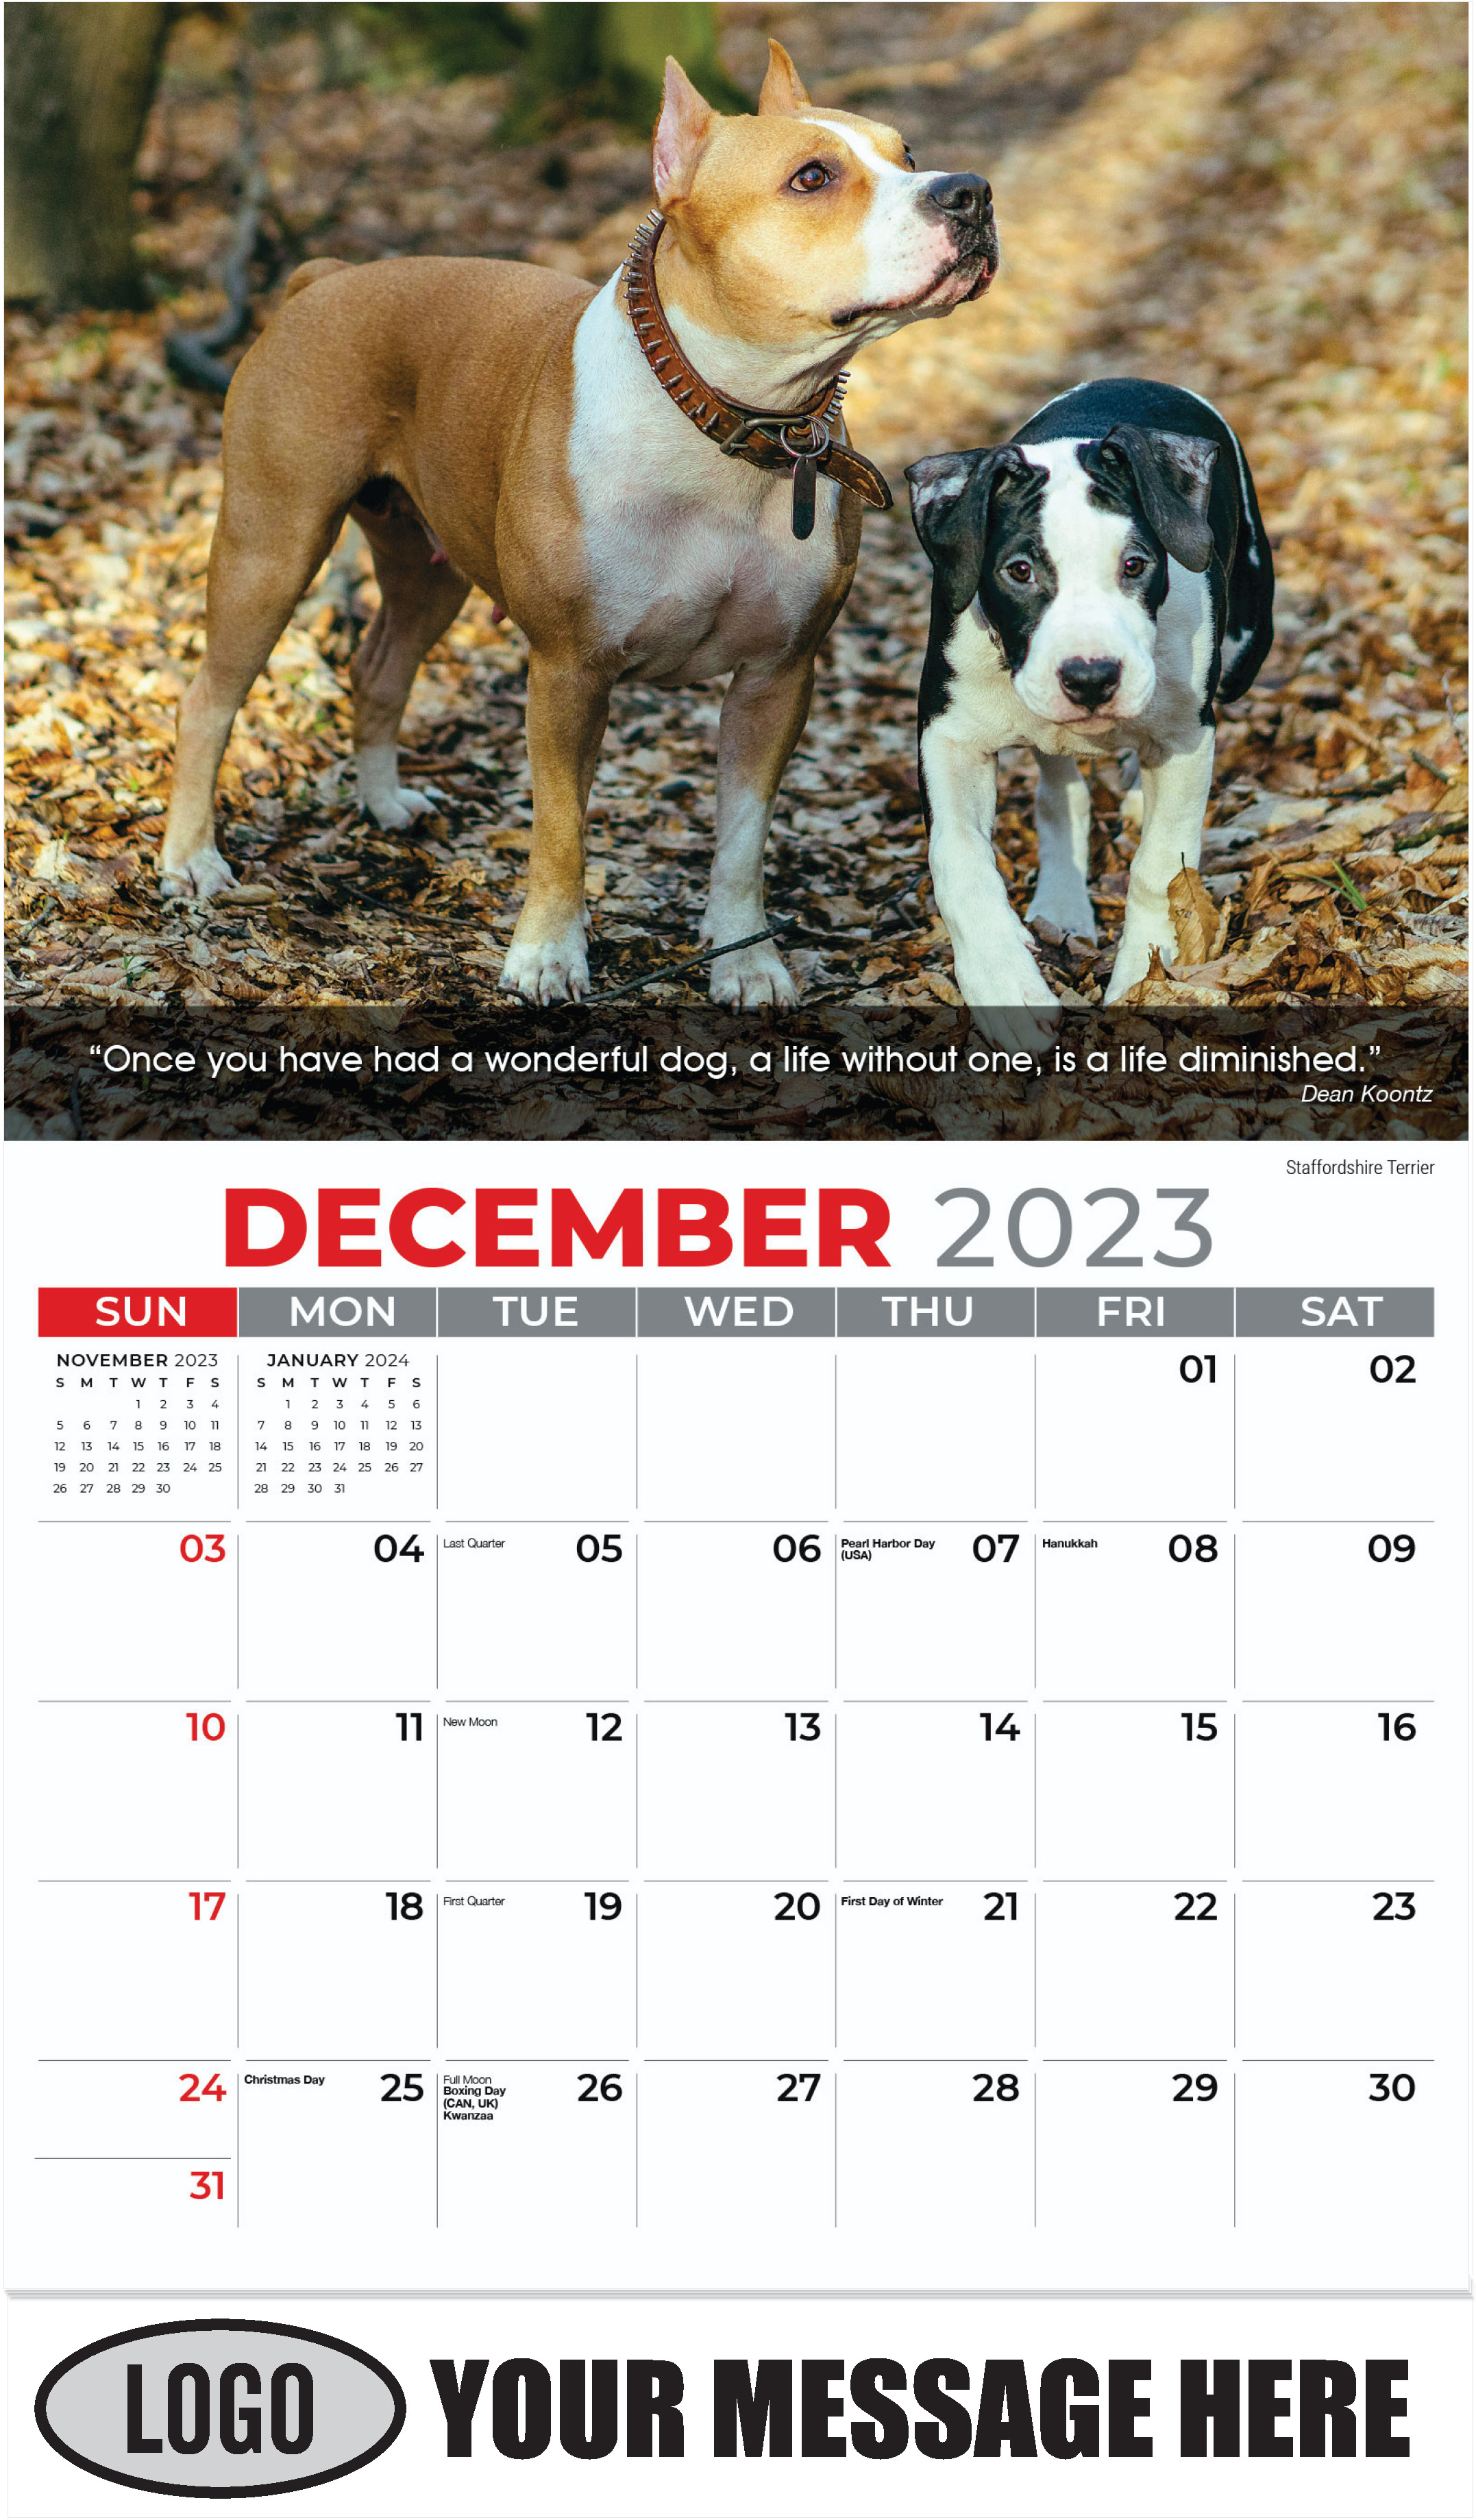 Staffordshire Terrier - December 2023 - Dogs, ''Man's Best Friends'' 2023 Promotional Calendar